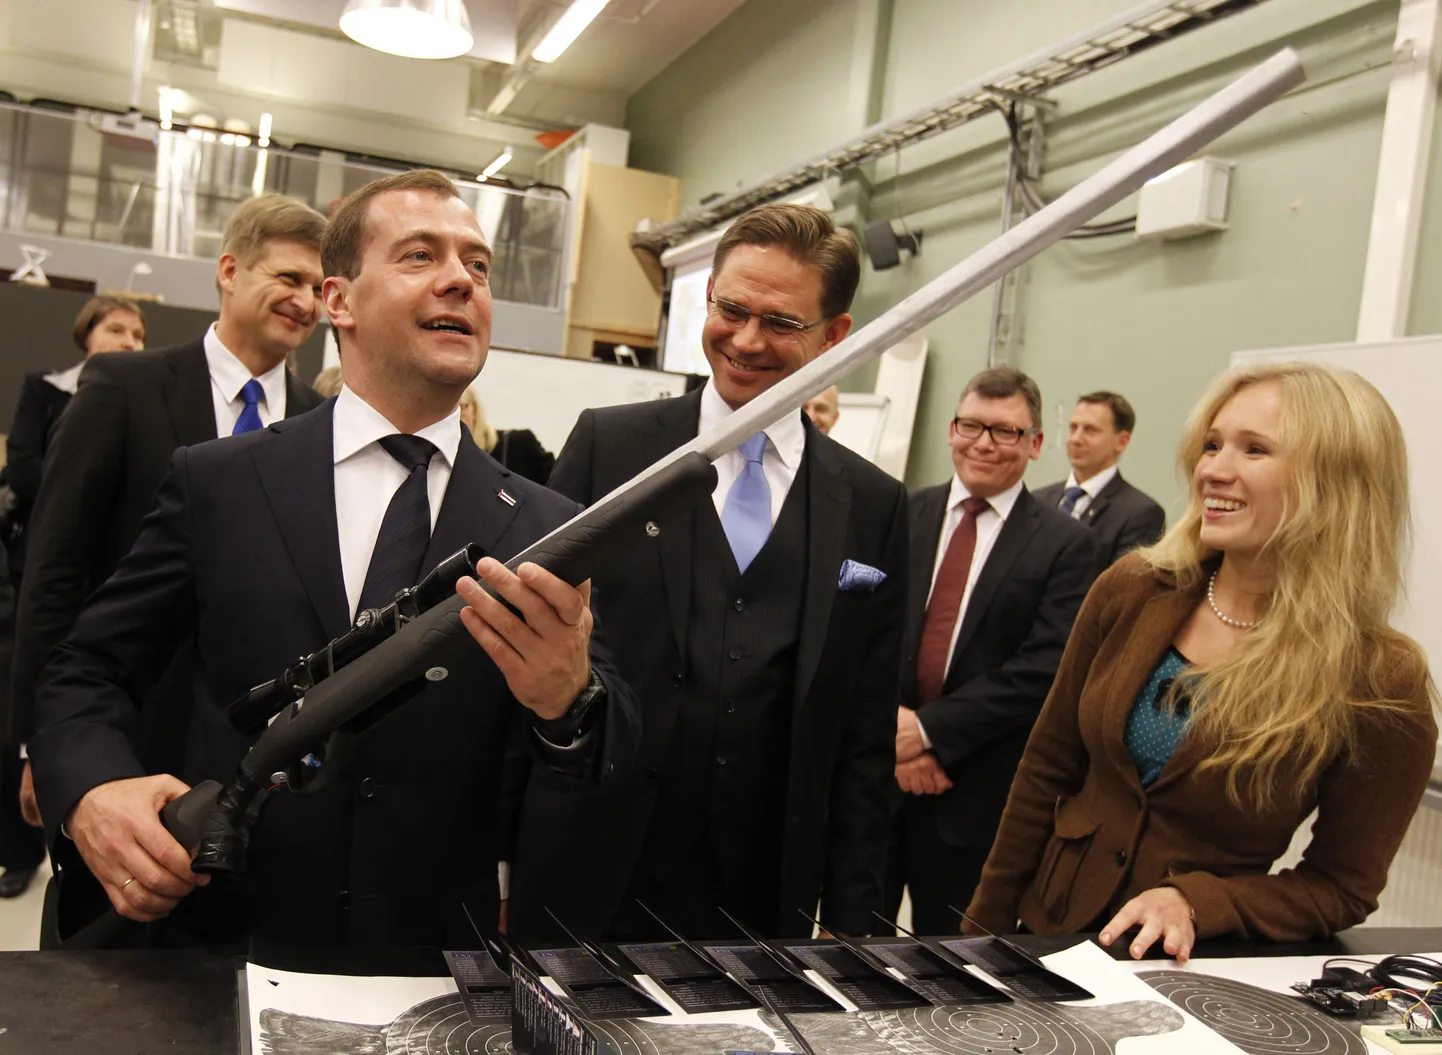 Vene peaminister Dmitri Medvedev (ees vasakul) eile Alto ülikoolis. Tema vasakul käel seisab Soome valitsusjuht Jyrki Katainen.